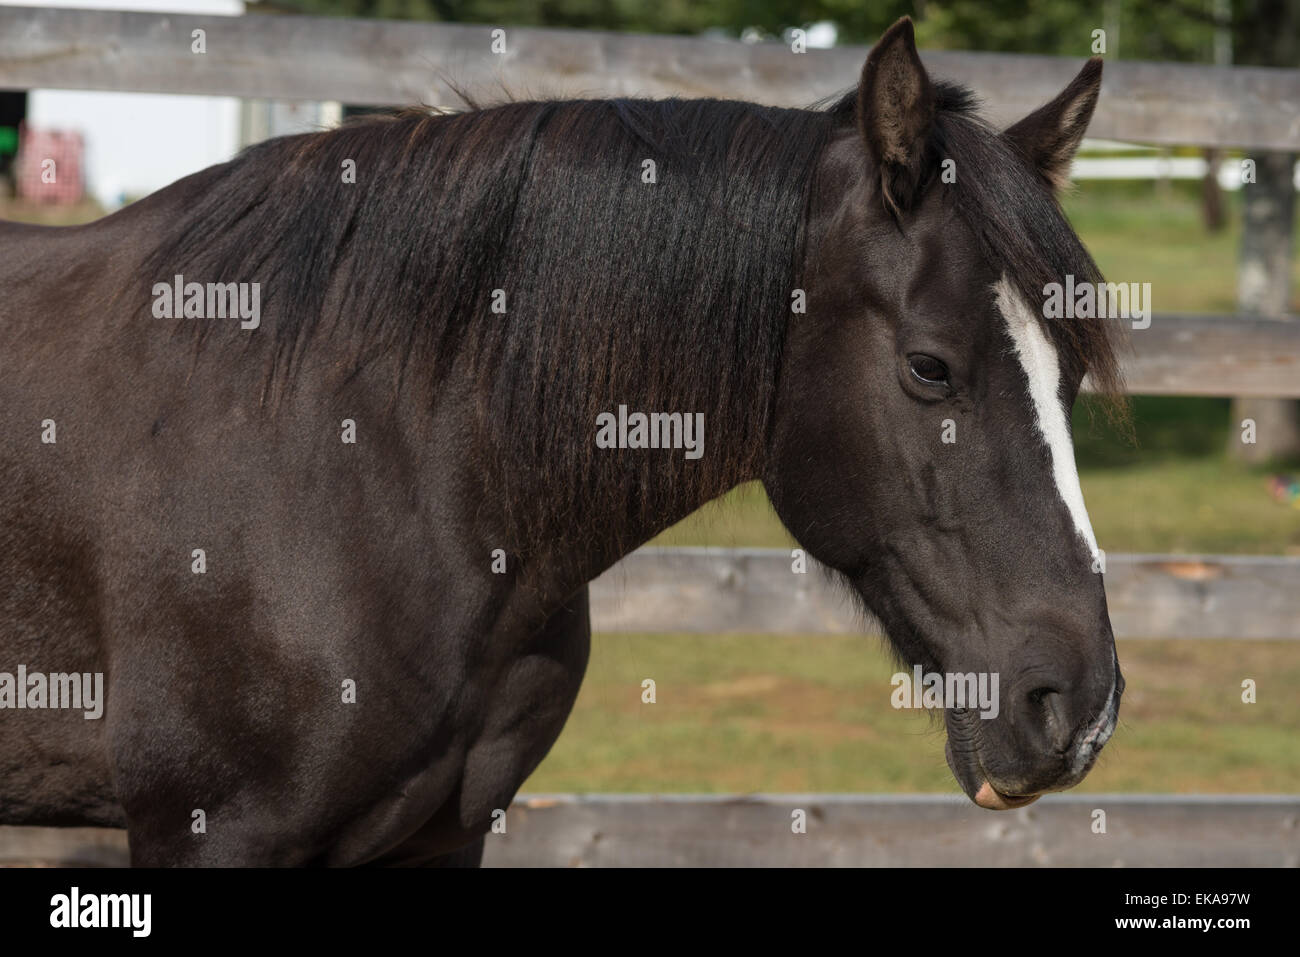 Portrait de l'avant d'un cheval canadien, Equus ferus caballus, debout dans une basse-cour Banque D'Images